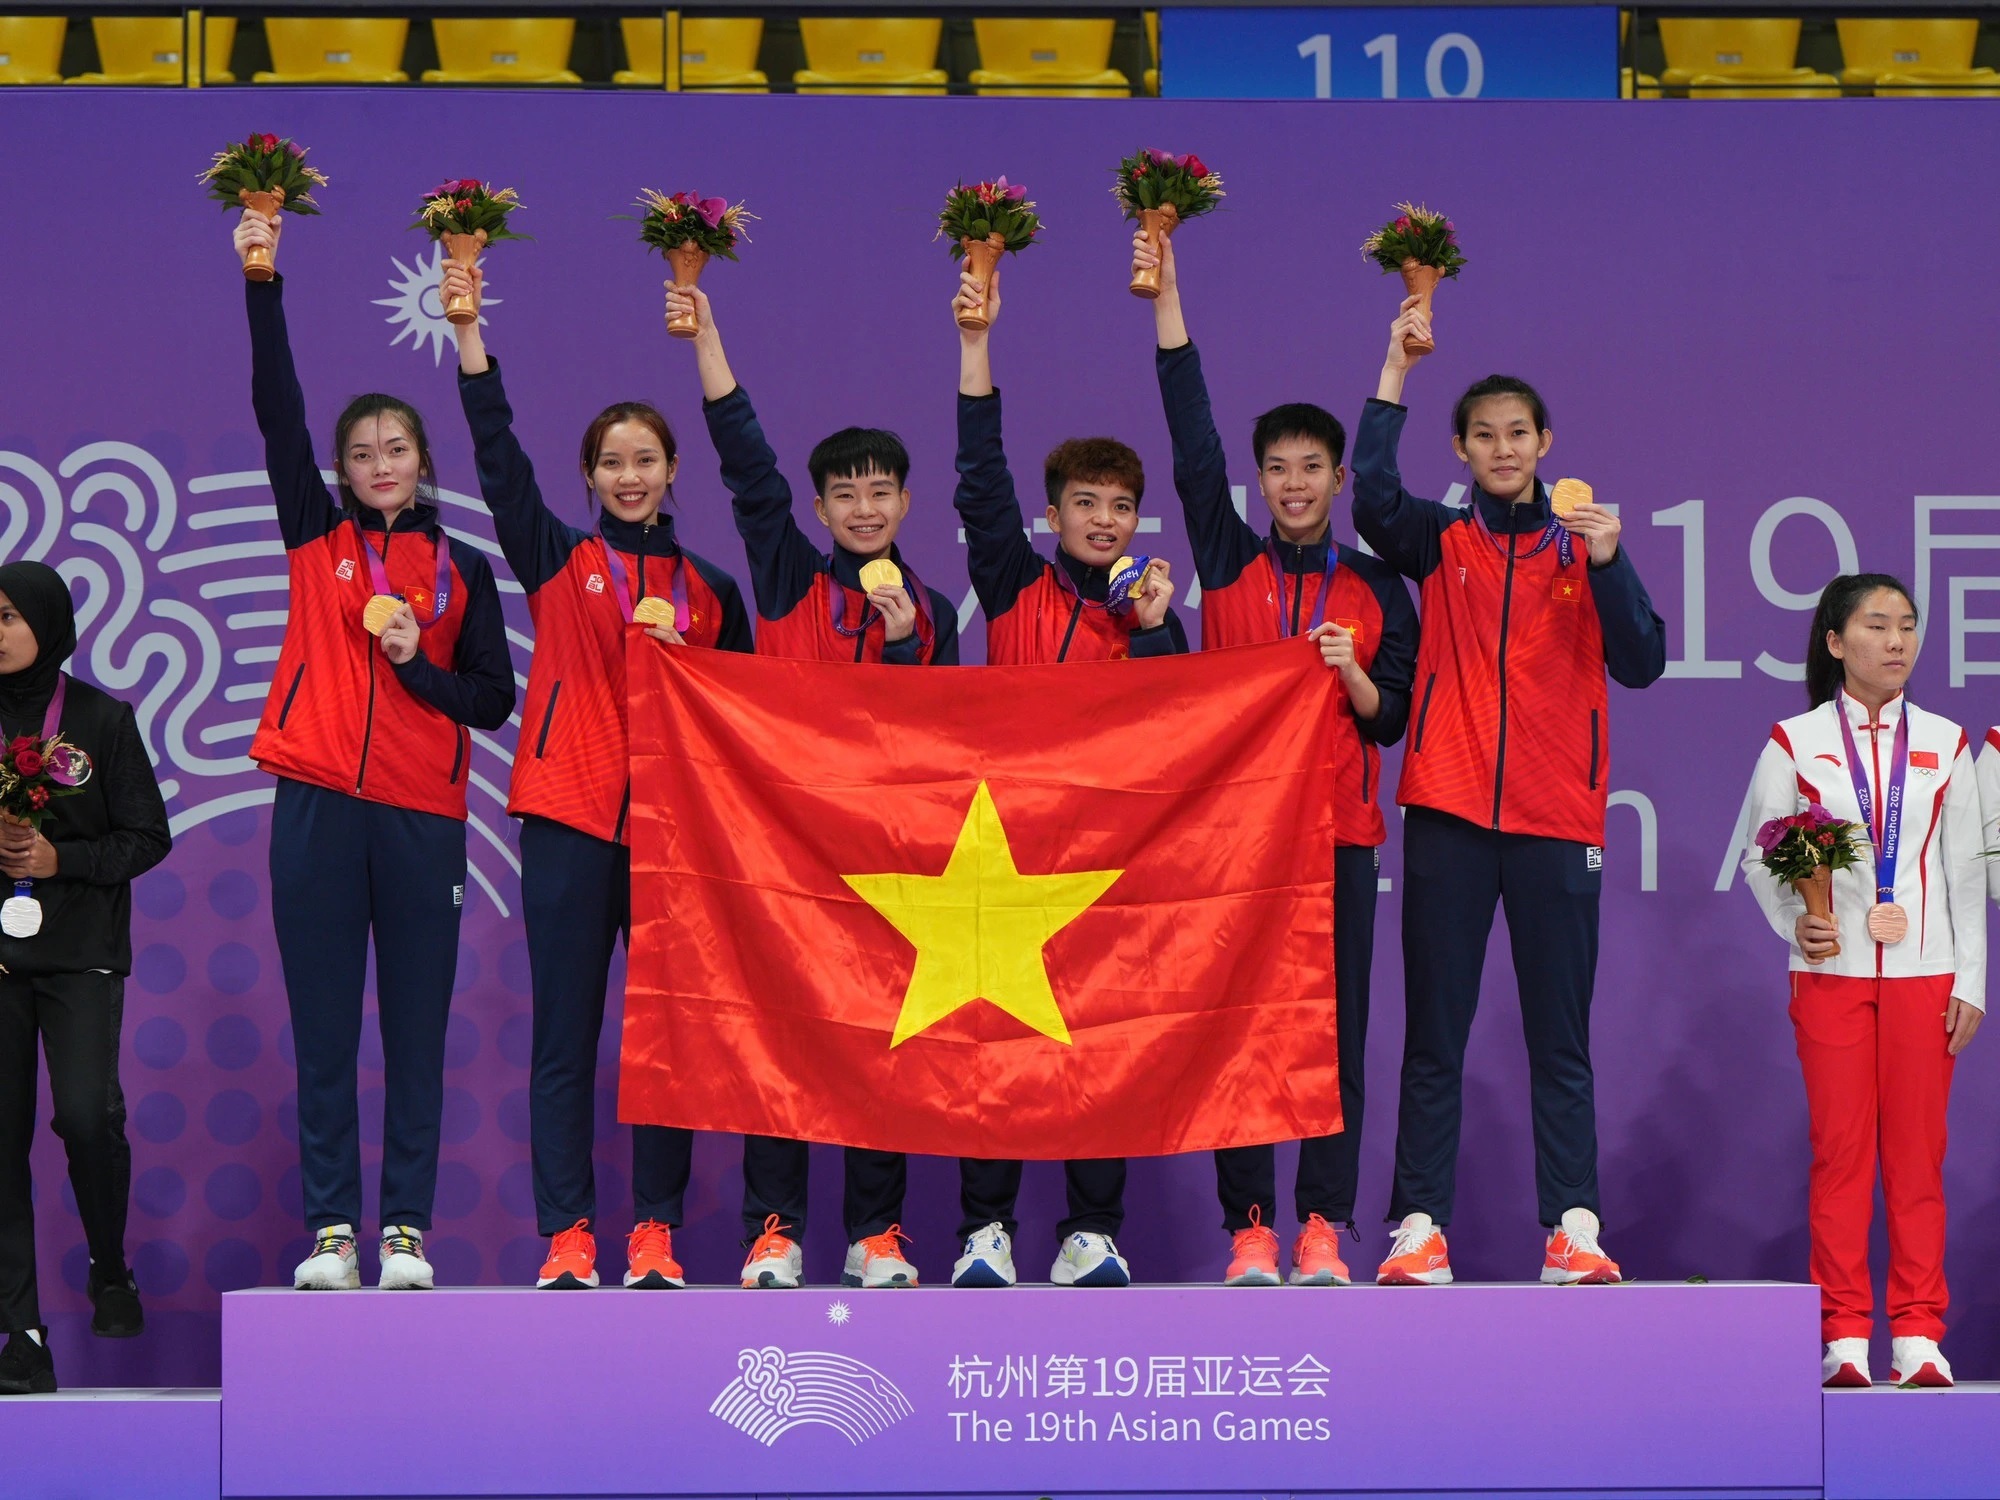 杭州アジア大会閉幕、ベトナムは金3個でフィニッシュ メダル獲得争い21